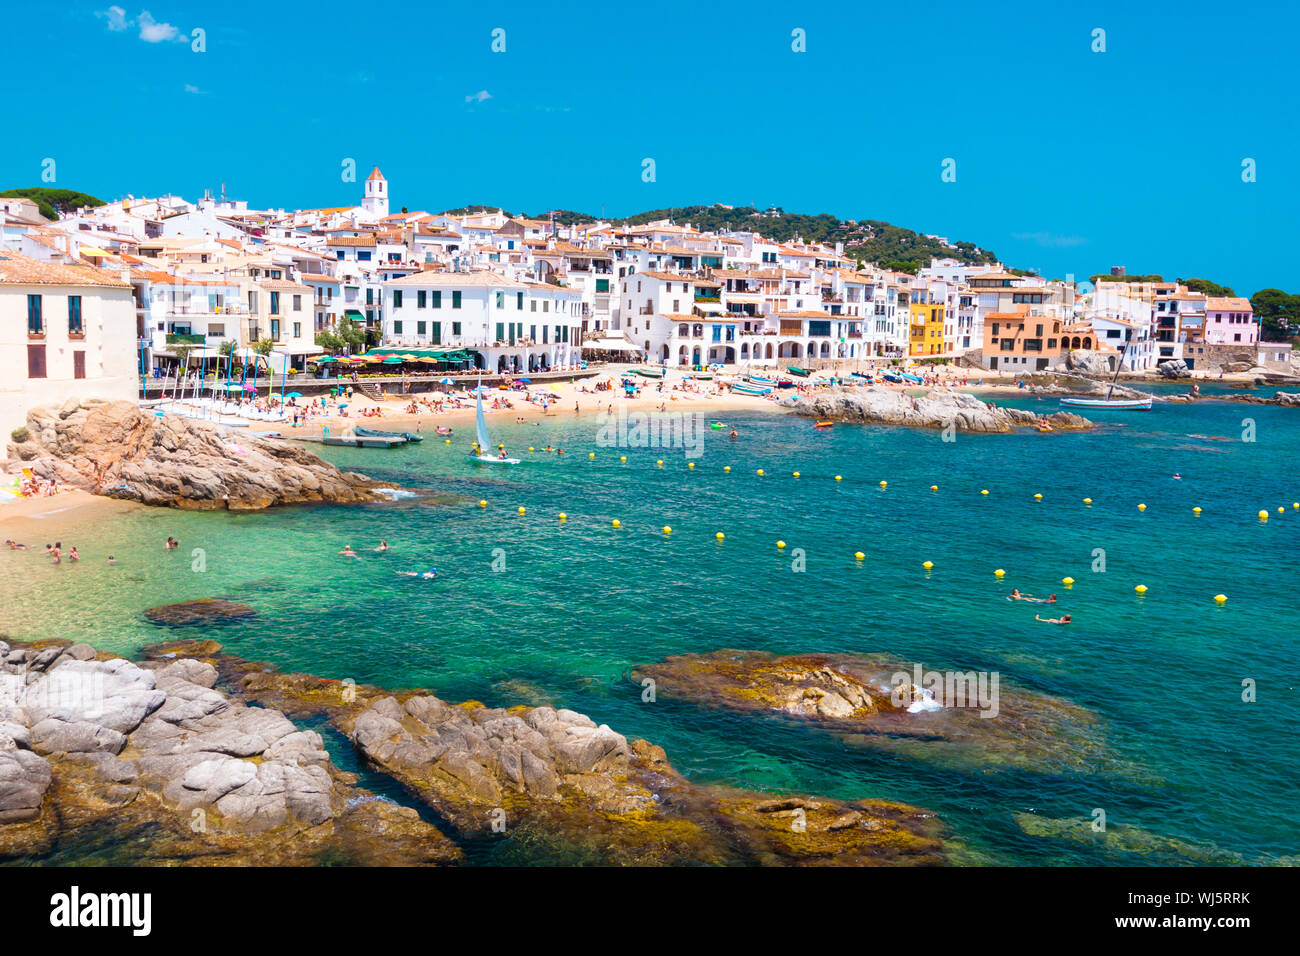 Calella de Palafrugell, imbiancati tradizionale villaggio di pescatori e una meta turistica e una destinazione per le vacanze sulla Costa Brava Catalogna. Foto Stock